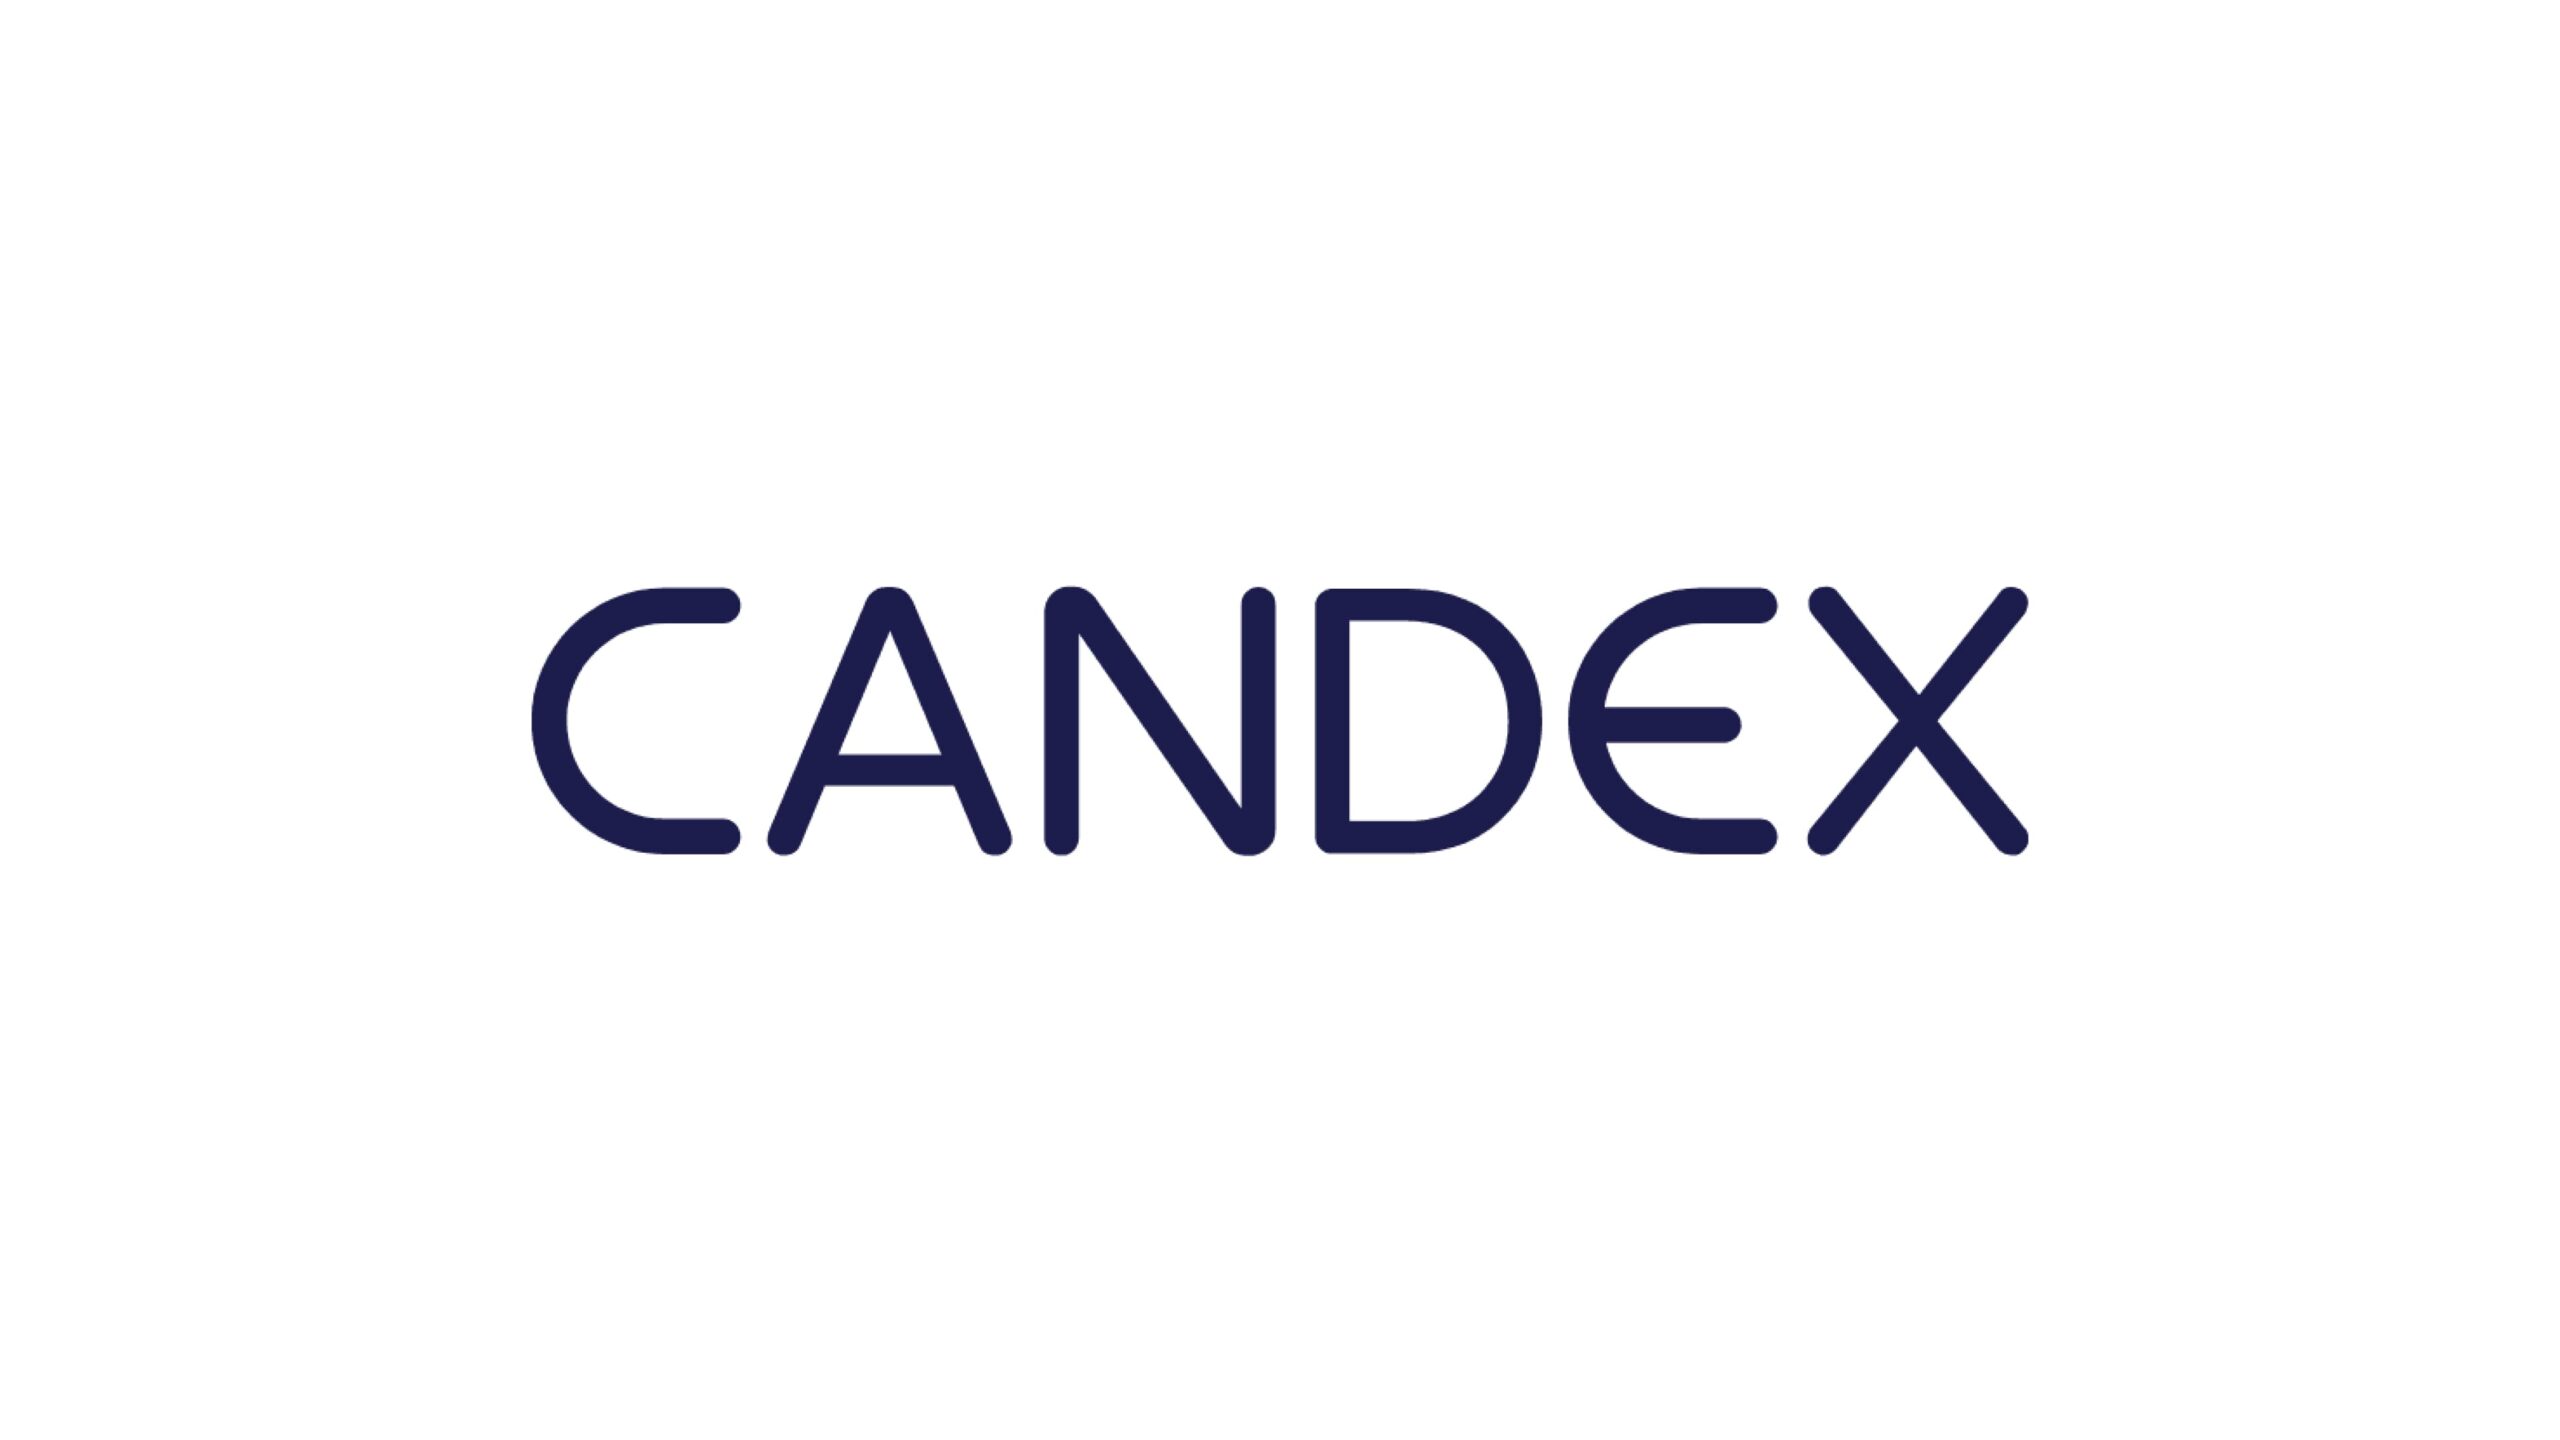 Candex、調達管理ビジネスの拡大のために4,500万ドルの資金調達を実施